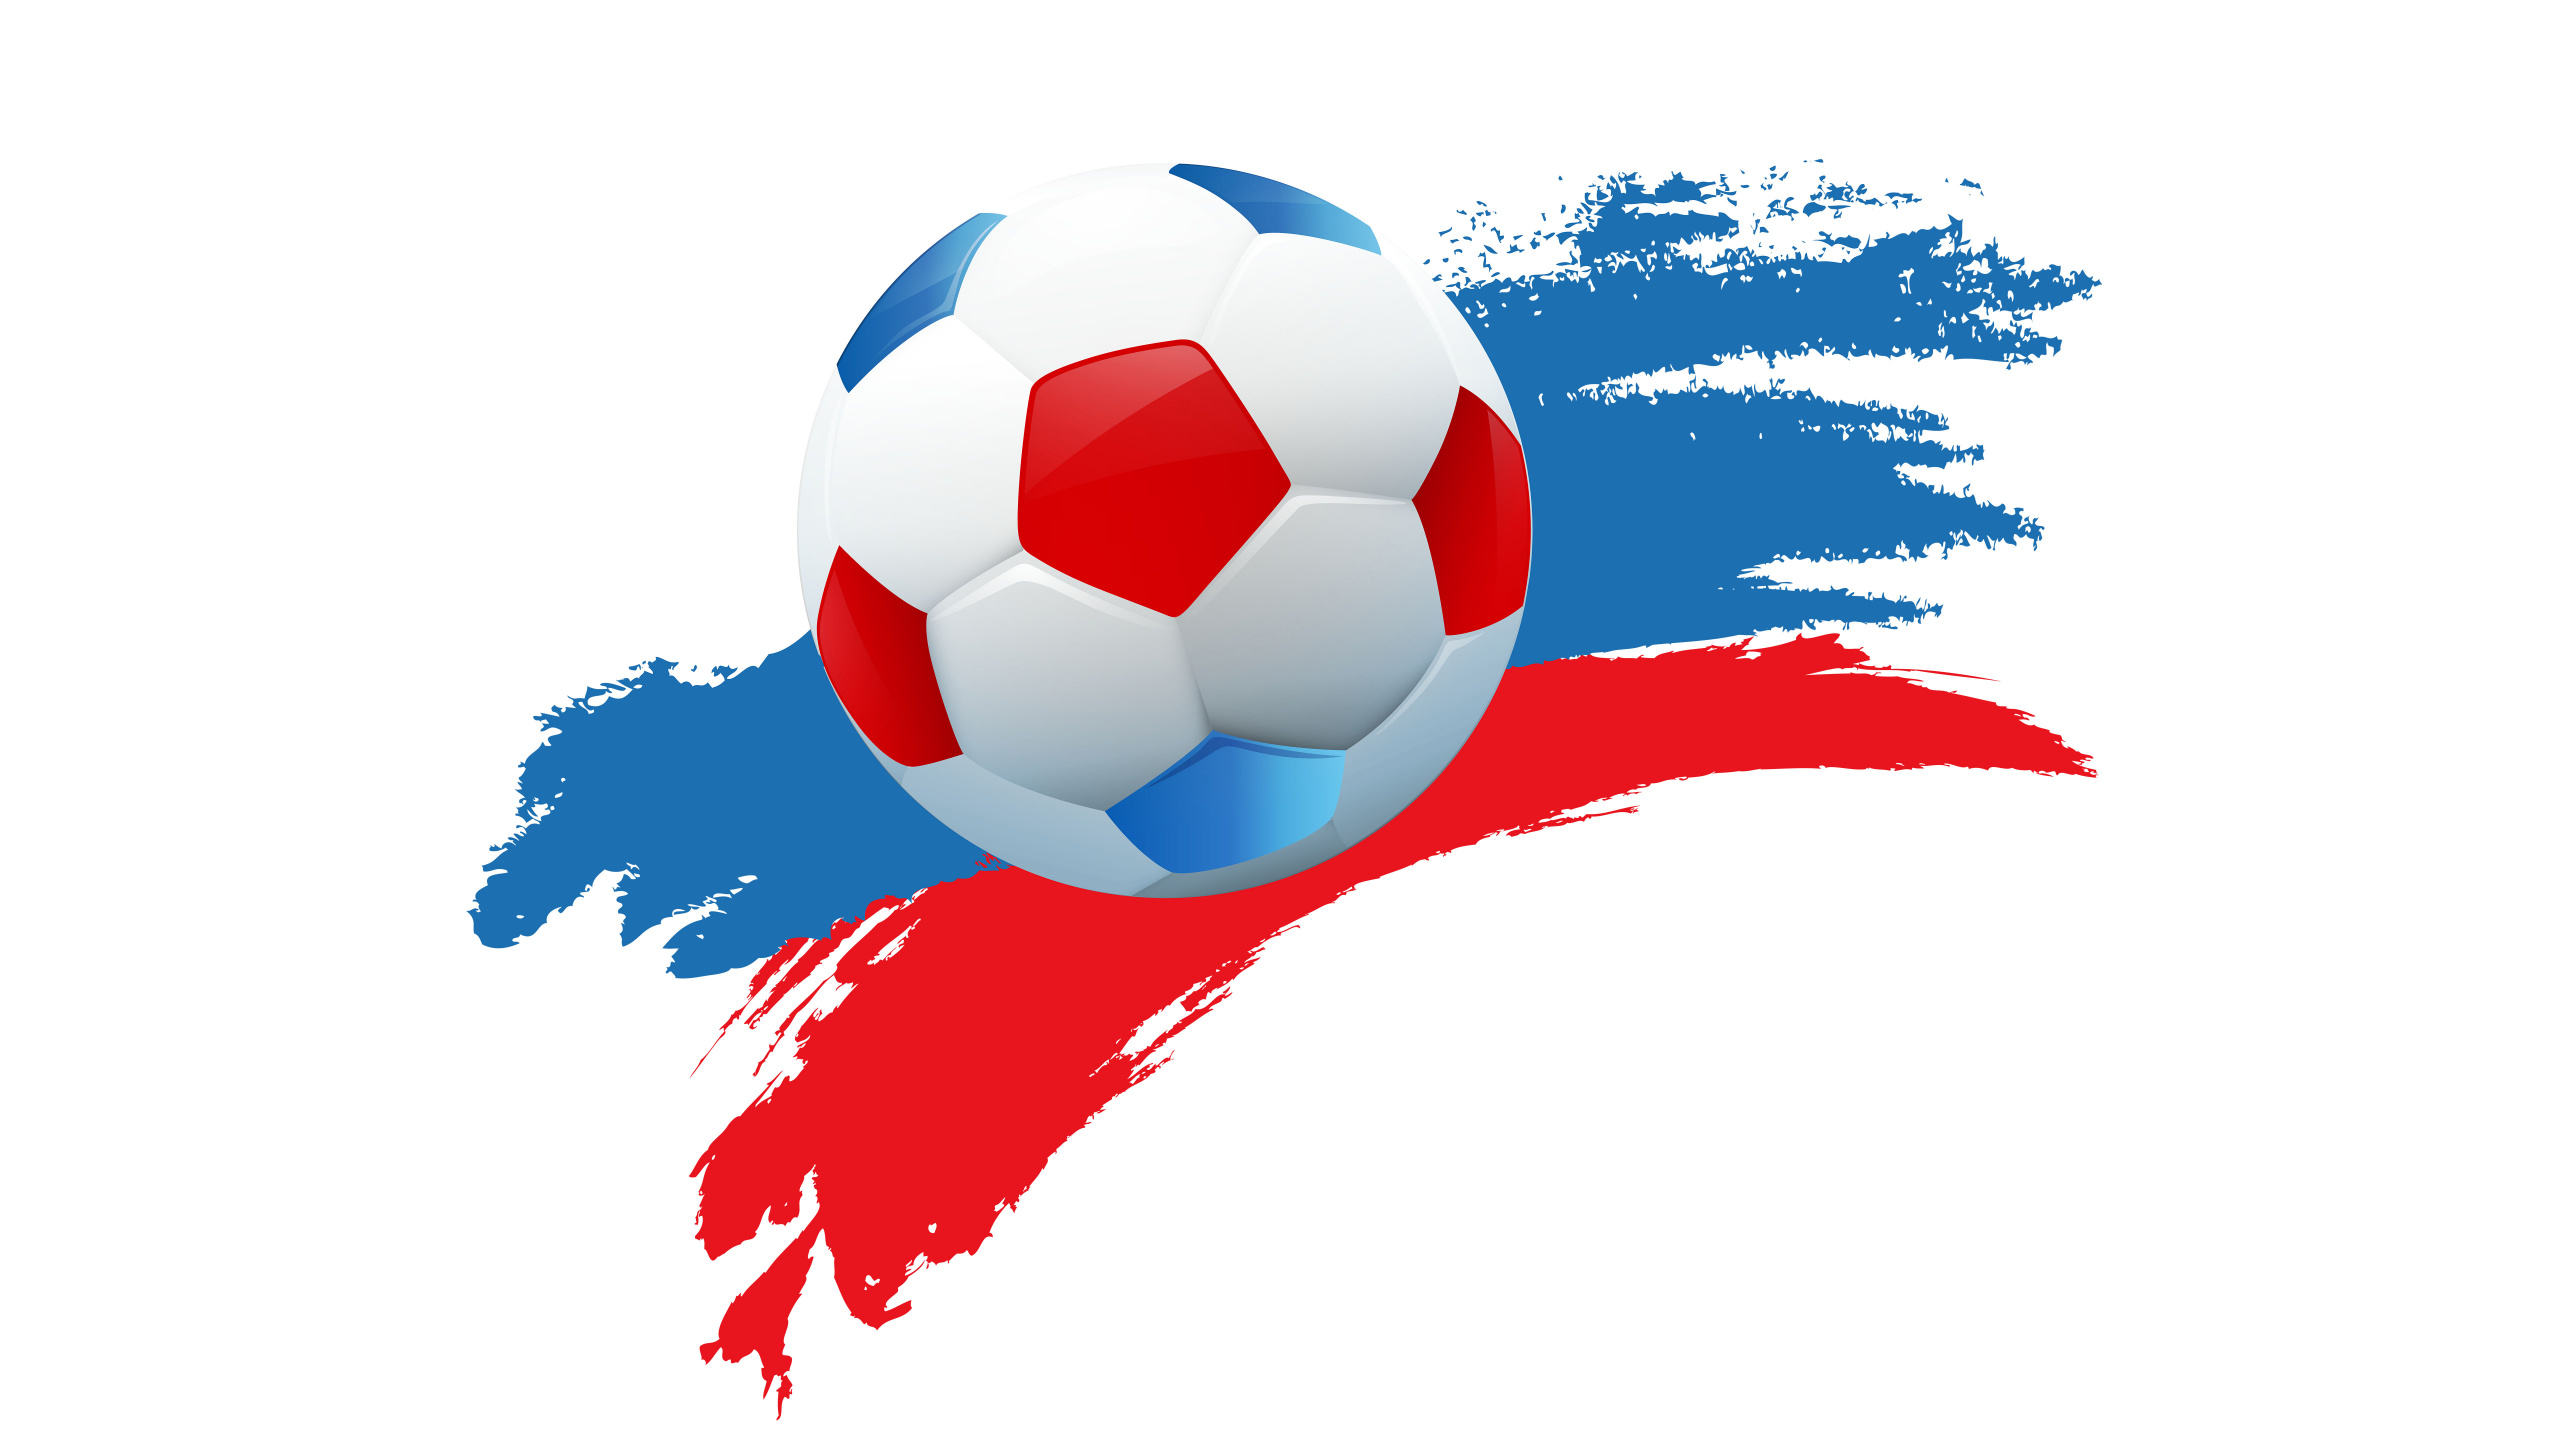 2018年世界杯, 球, 国际足联, 足球, 体育设备 壁纸 2560x1440 允许